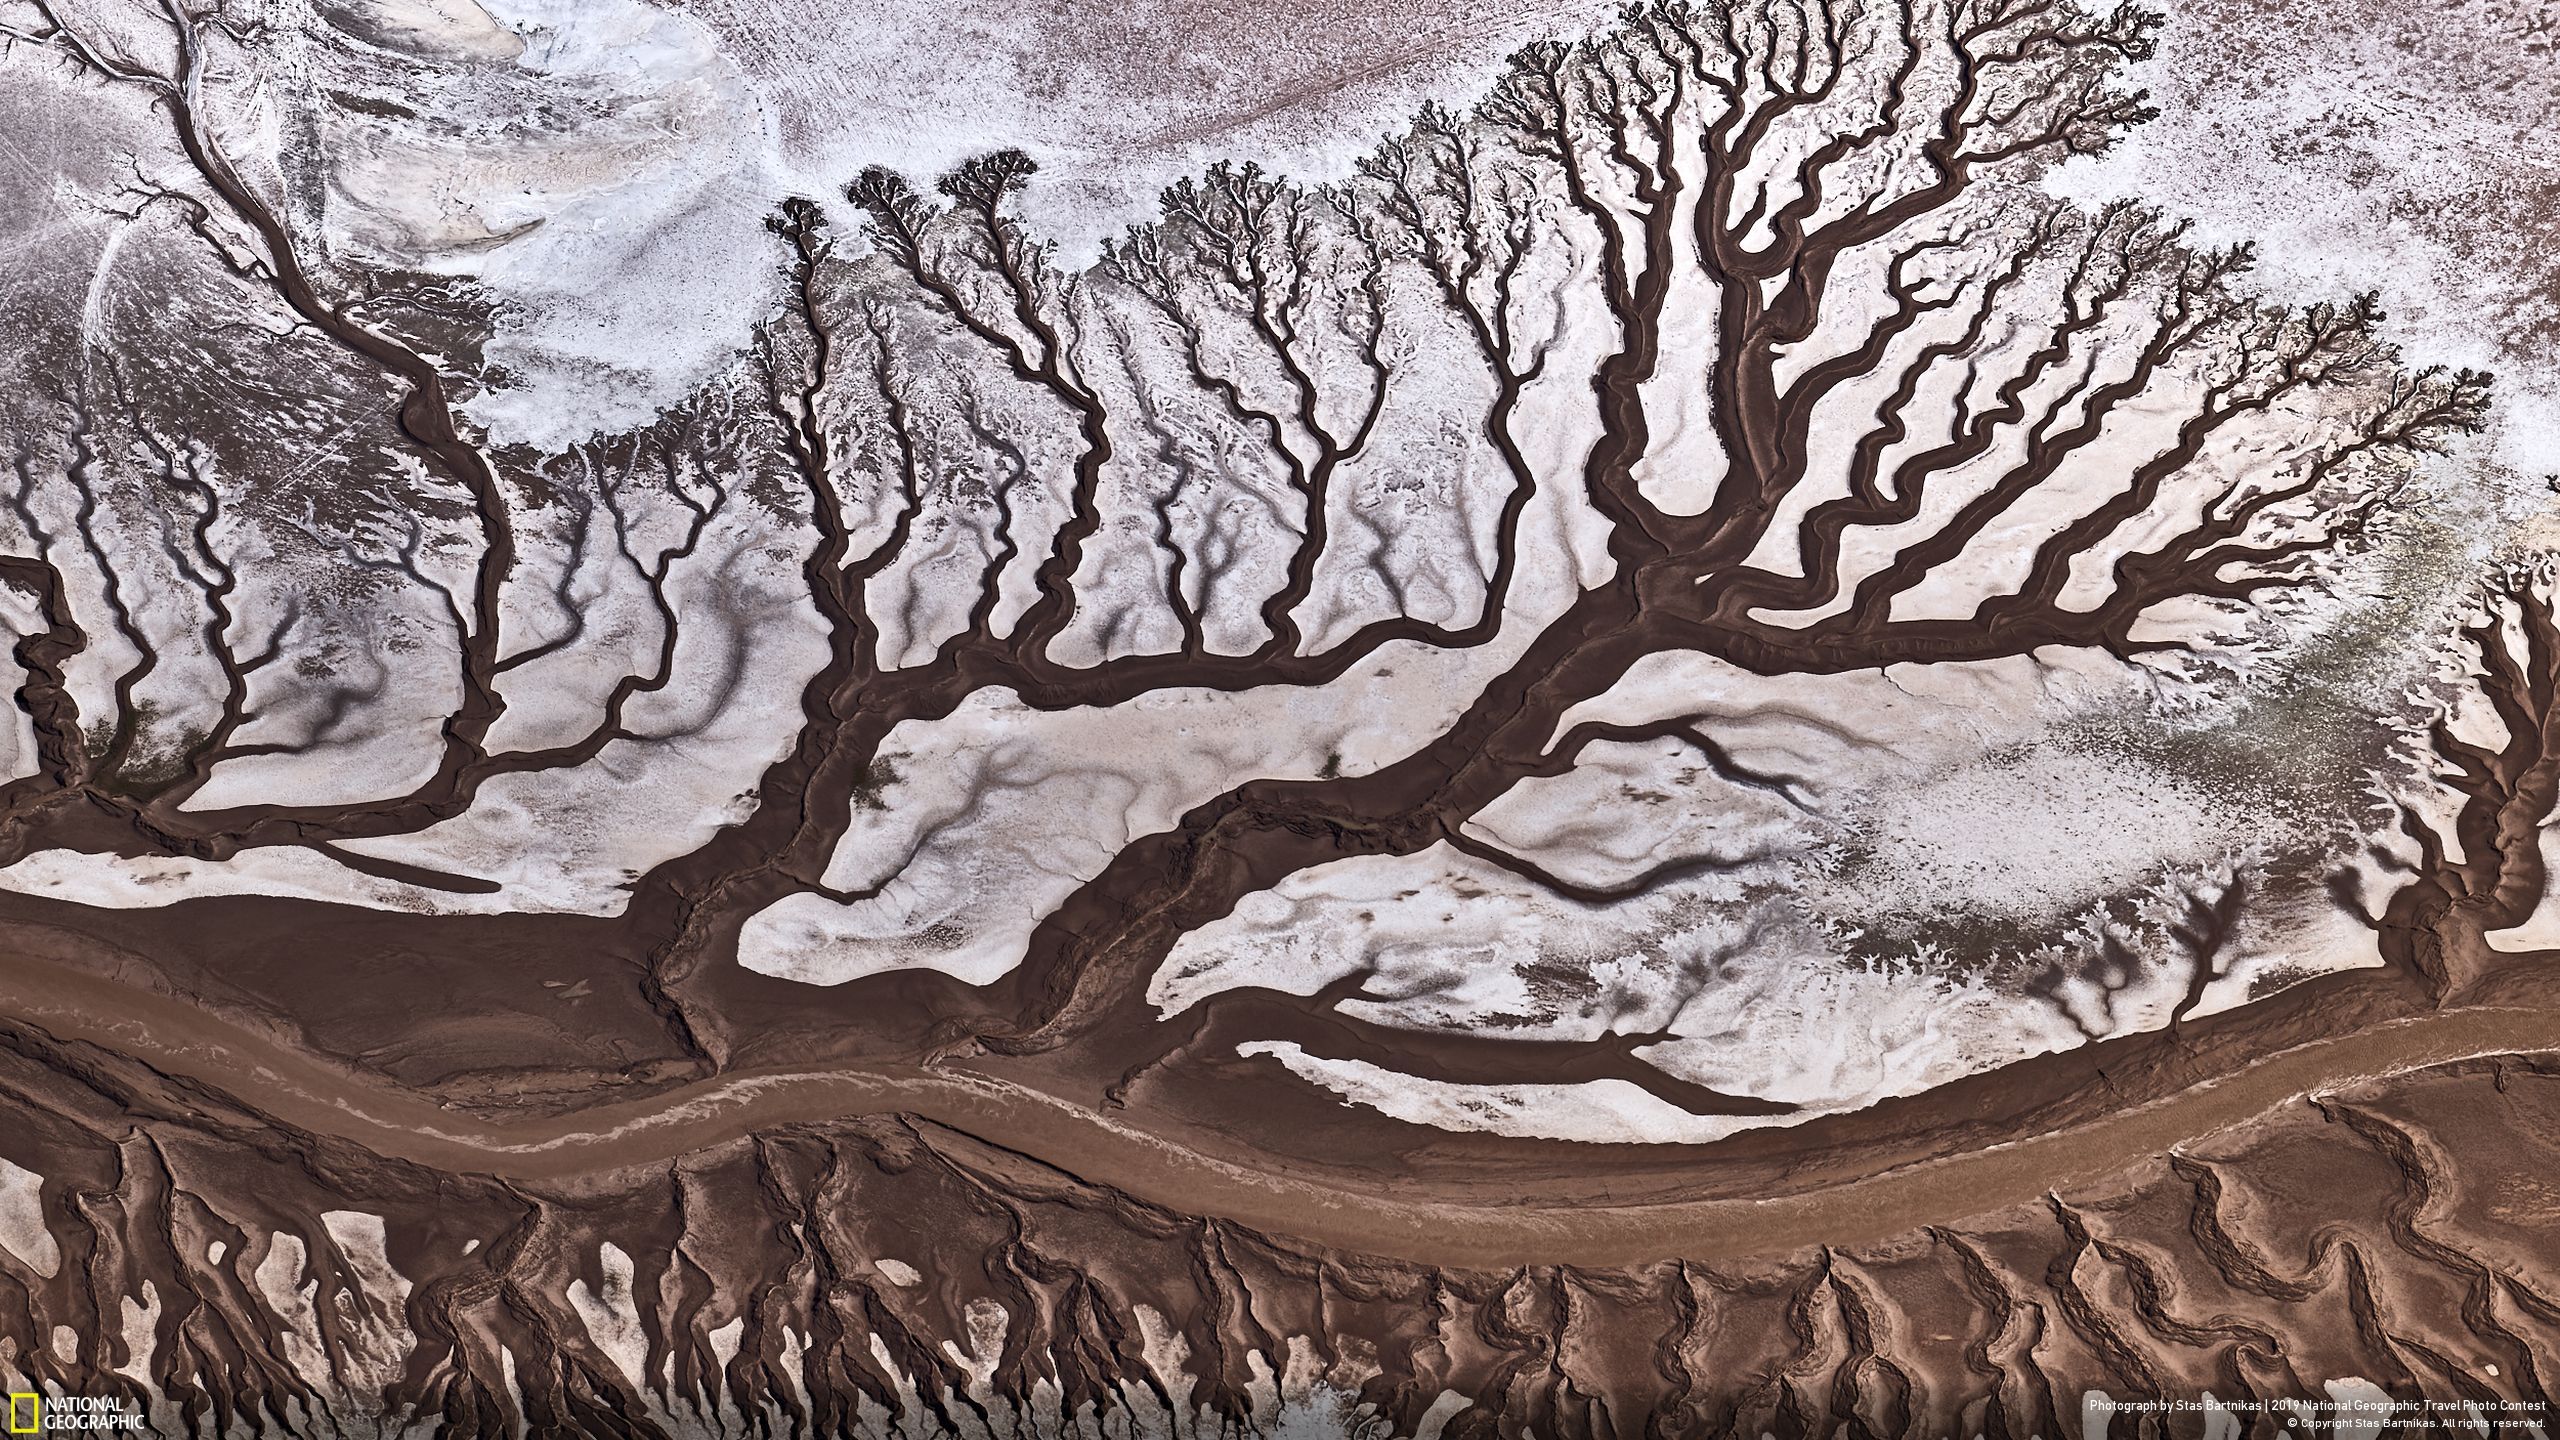 Giải do độc giả bình chọn mục Thiên nhiên thuộc về tác phẩm “Colorado River” (tạm dịch: “Dòng sông Colorado”) của Stas Bartnikas chụp từ máy bay Cessna.